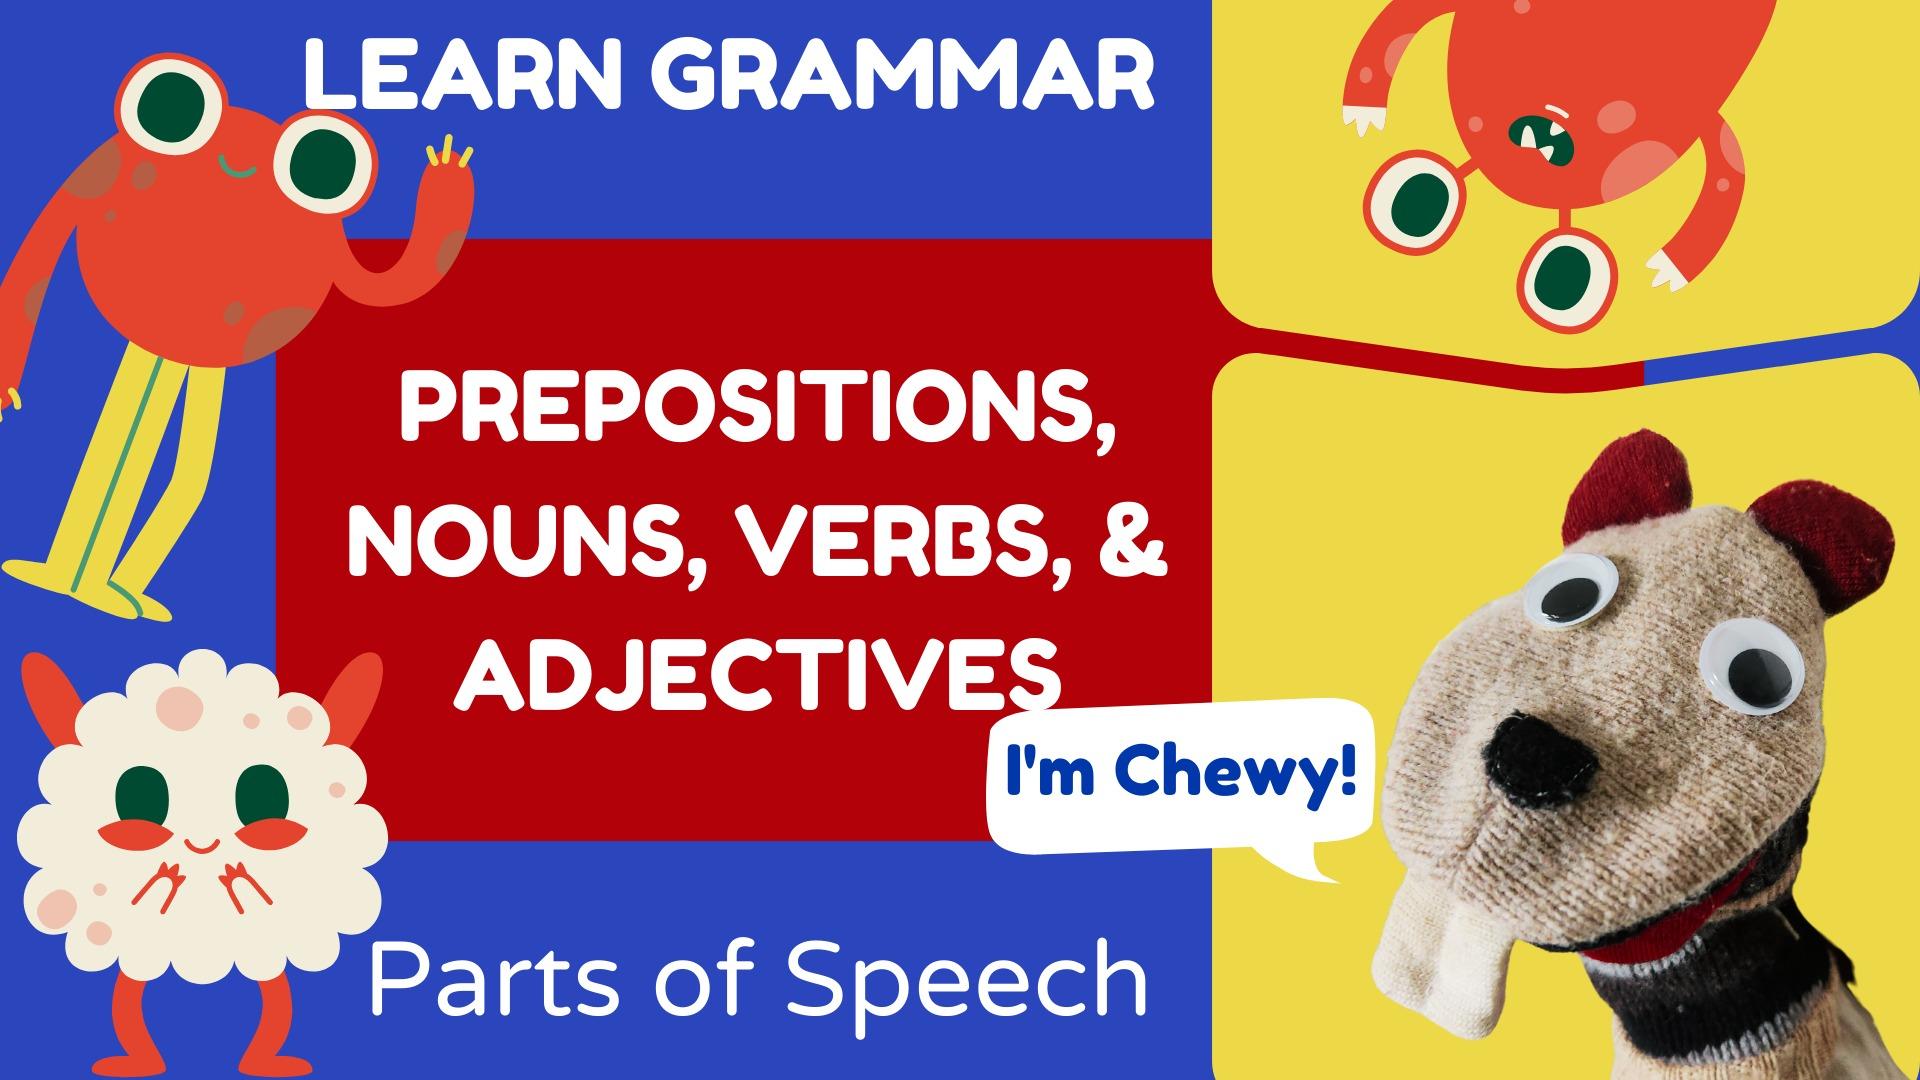 Prepositions, Nouns, Verbs, and Adjectives: Four Parts of Speech | Grammar